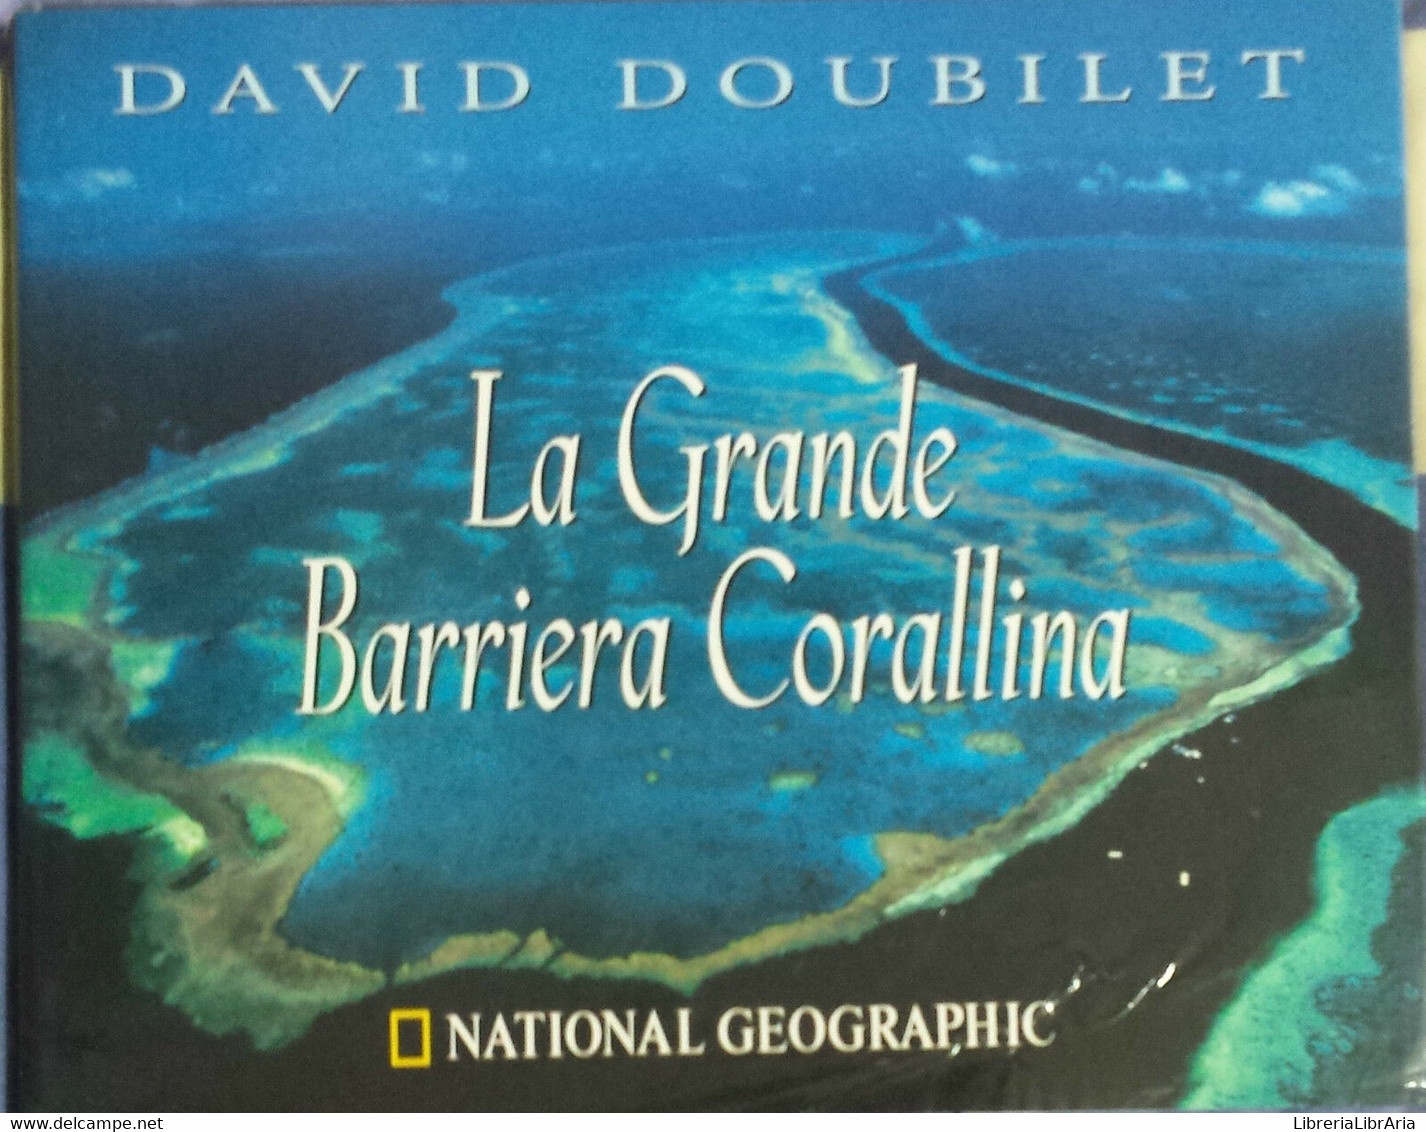 La Grande Barriera Corallina - David Doubilet - White Star - 2003 - G - Enzyklopädien